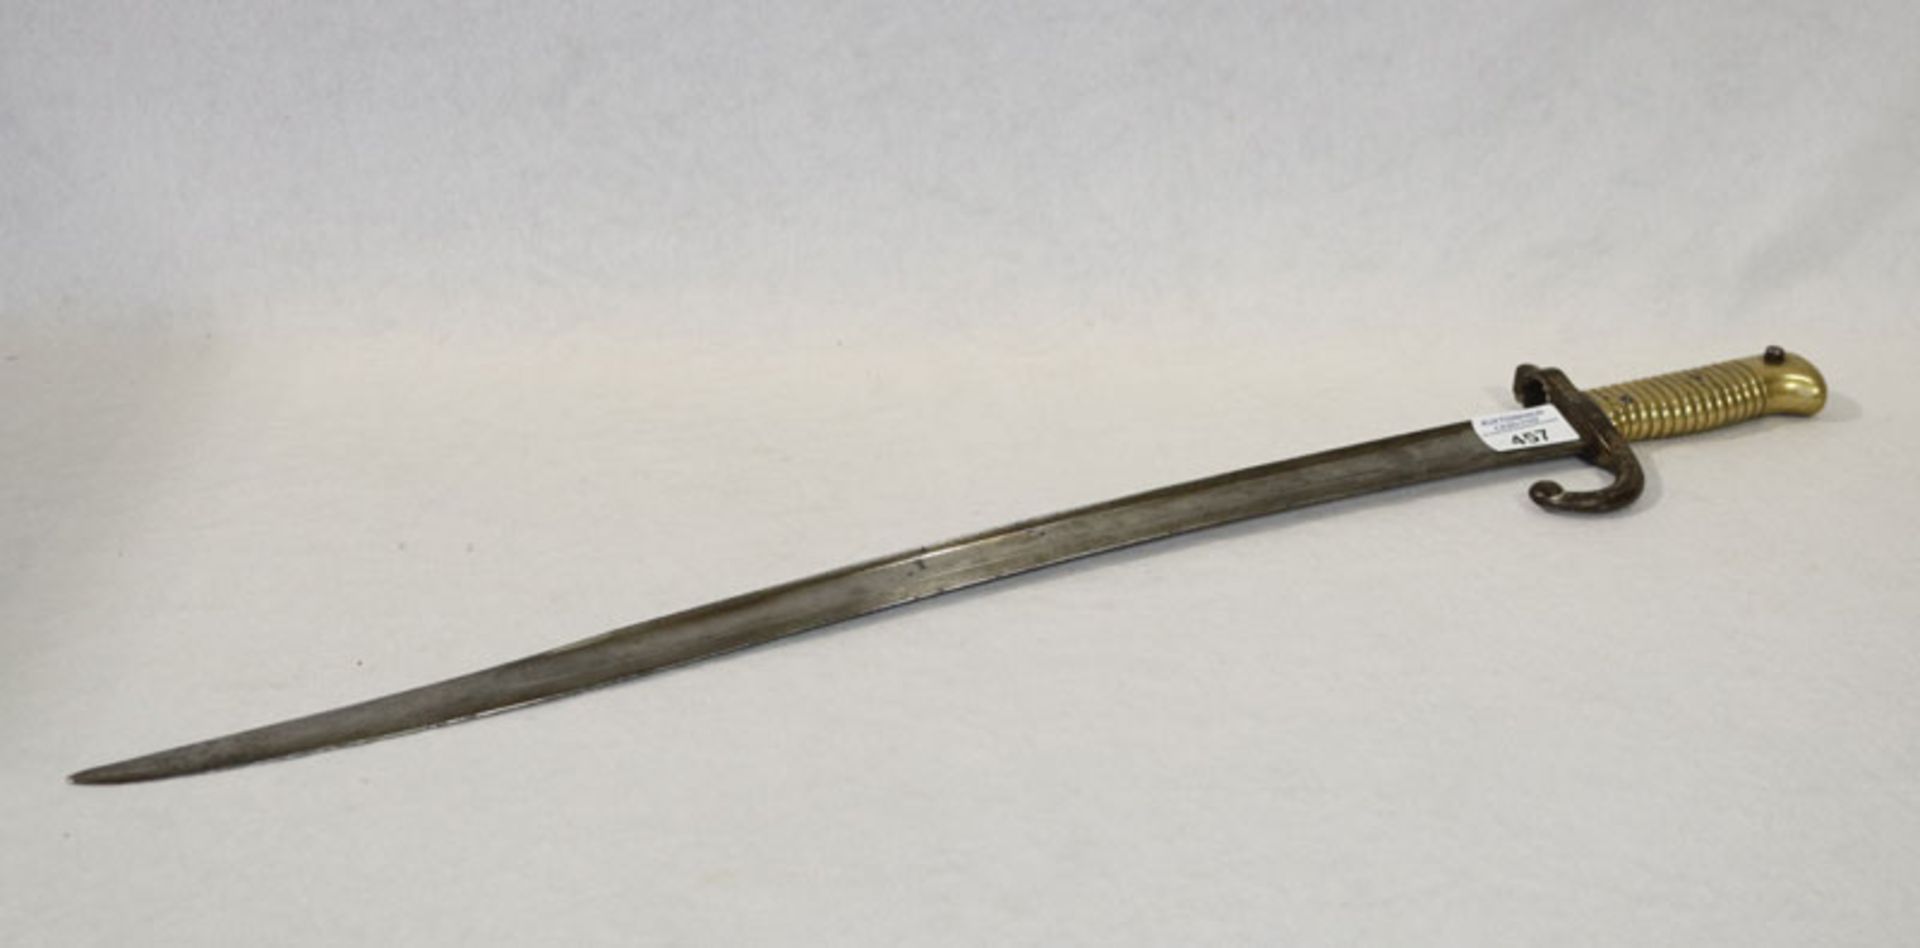 Seitengewehr, datiert 1861 ?, Gebrauchs- und Altersspuren, L 70 cm